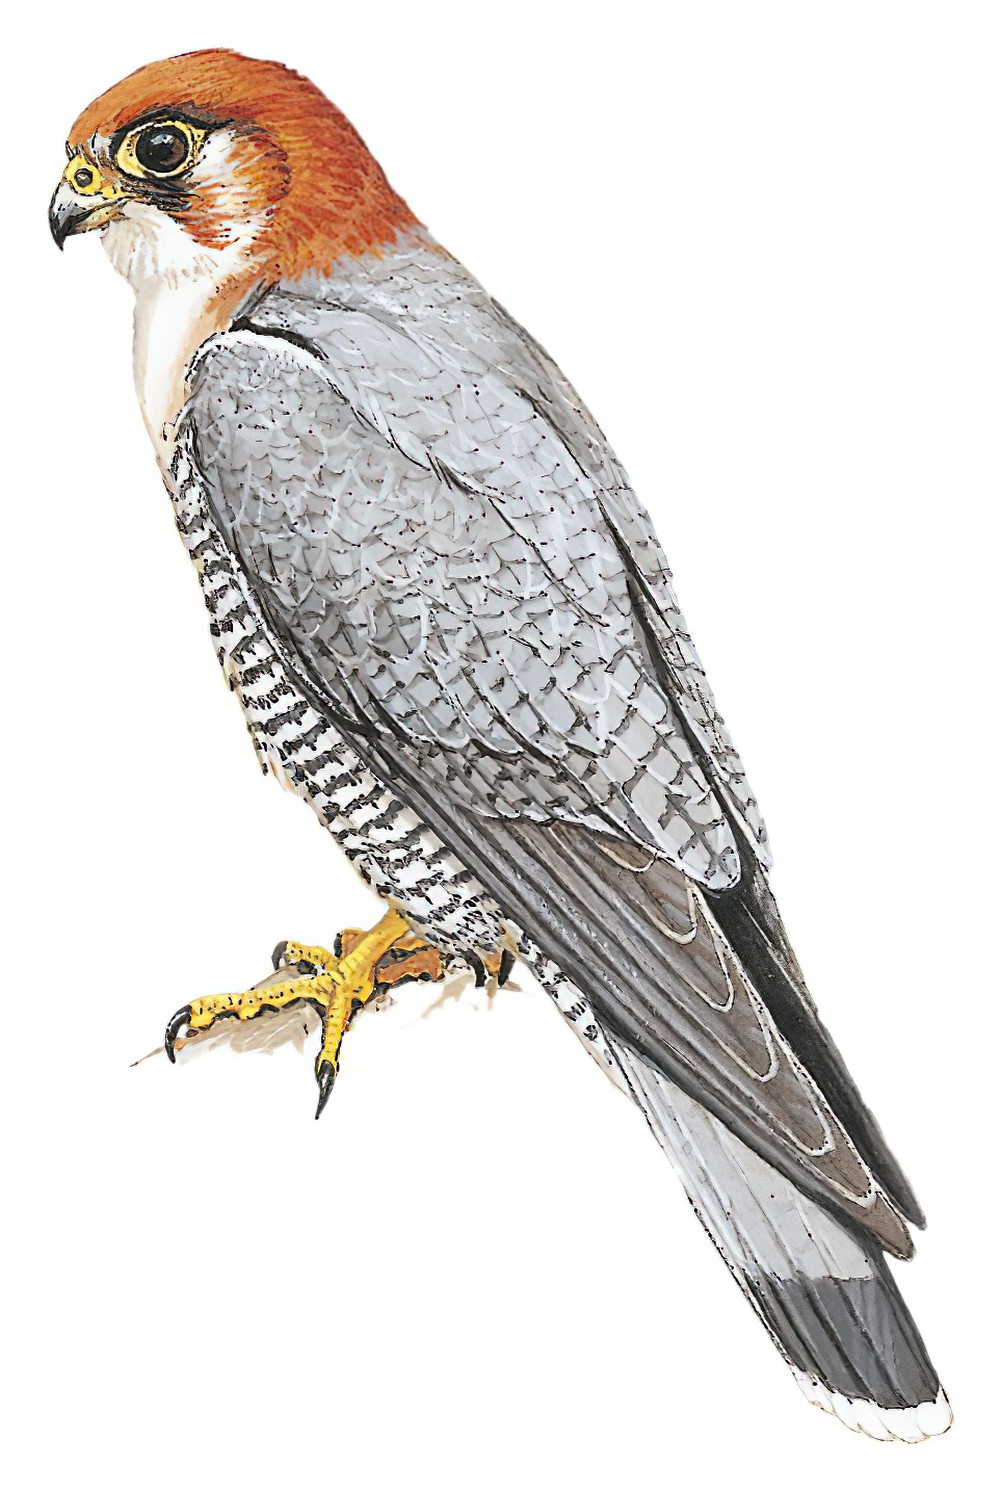 Red-necked Falcon / Falco chicquera